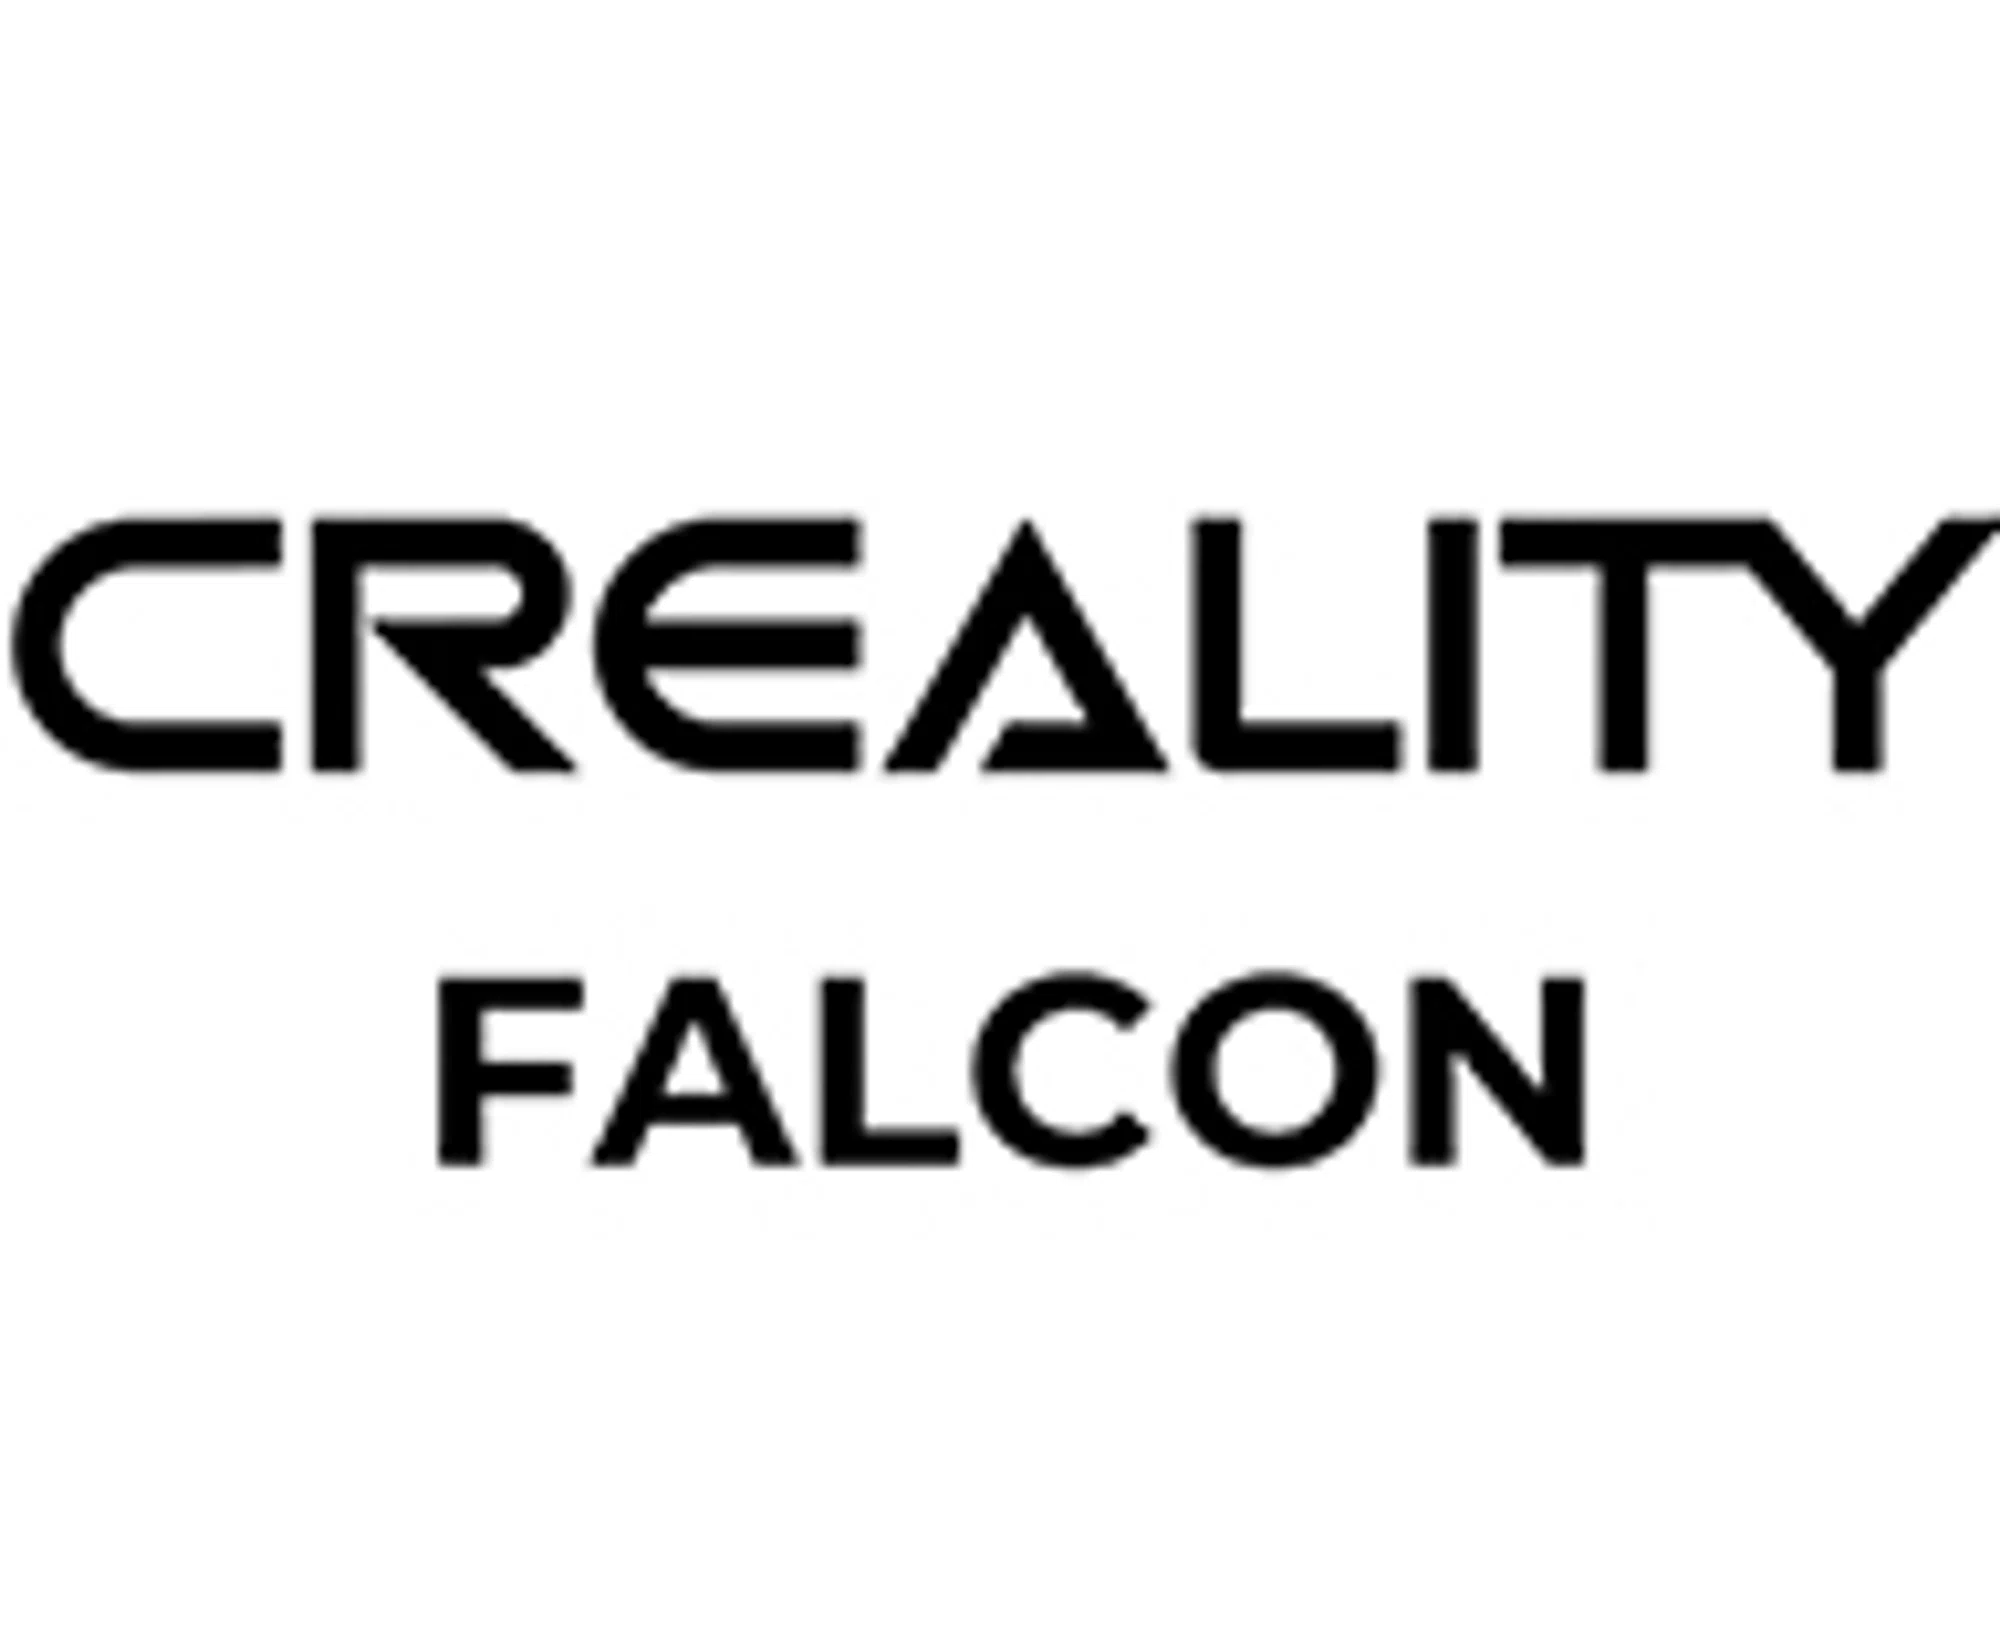 CrealityFalcon